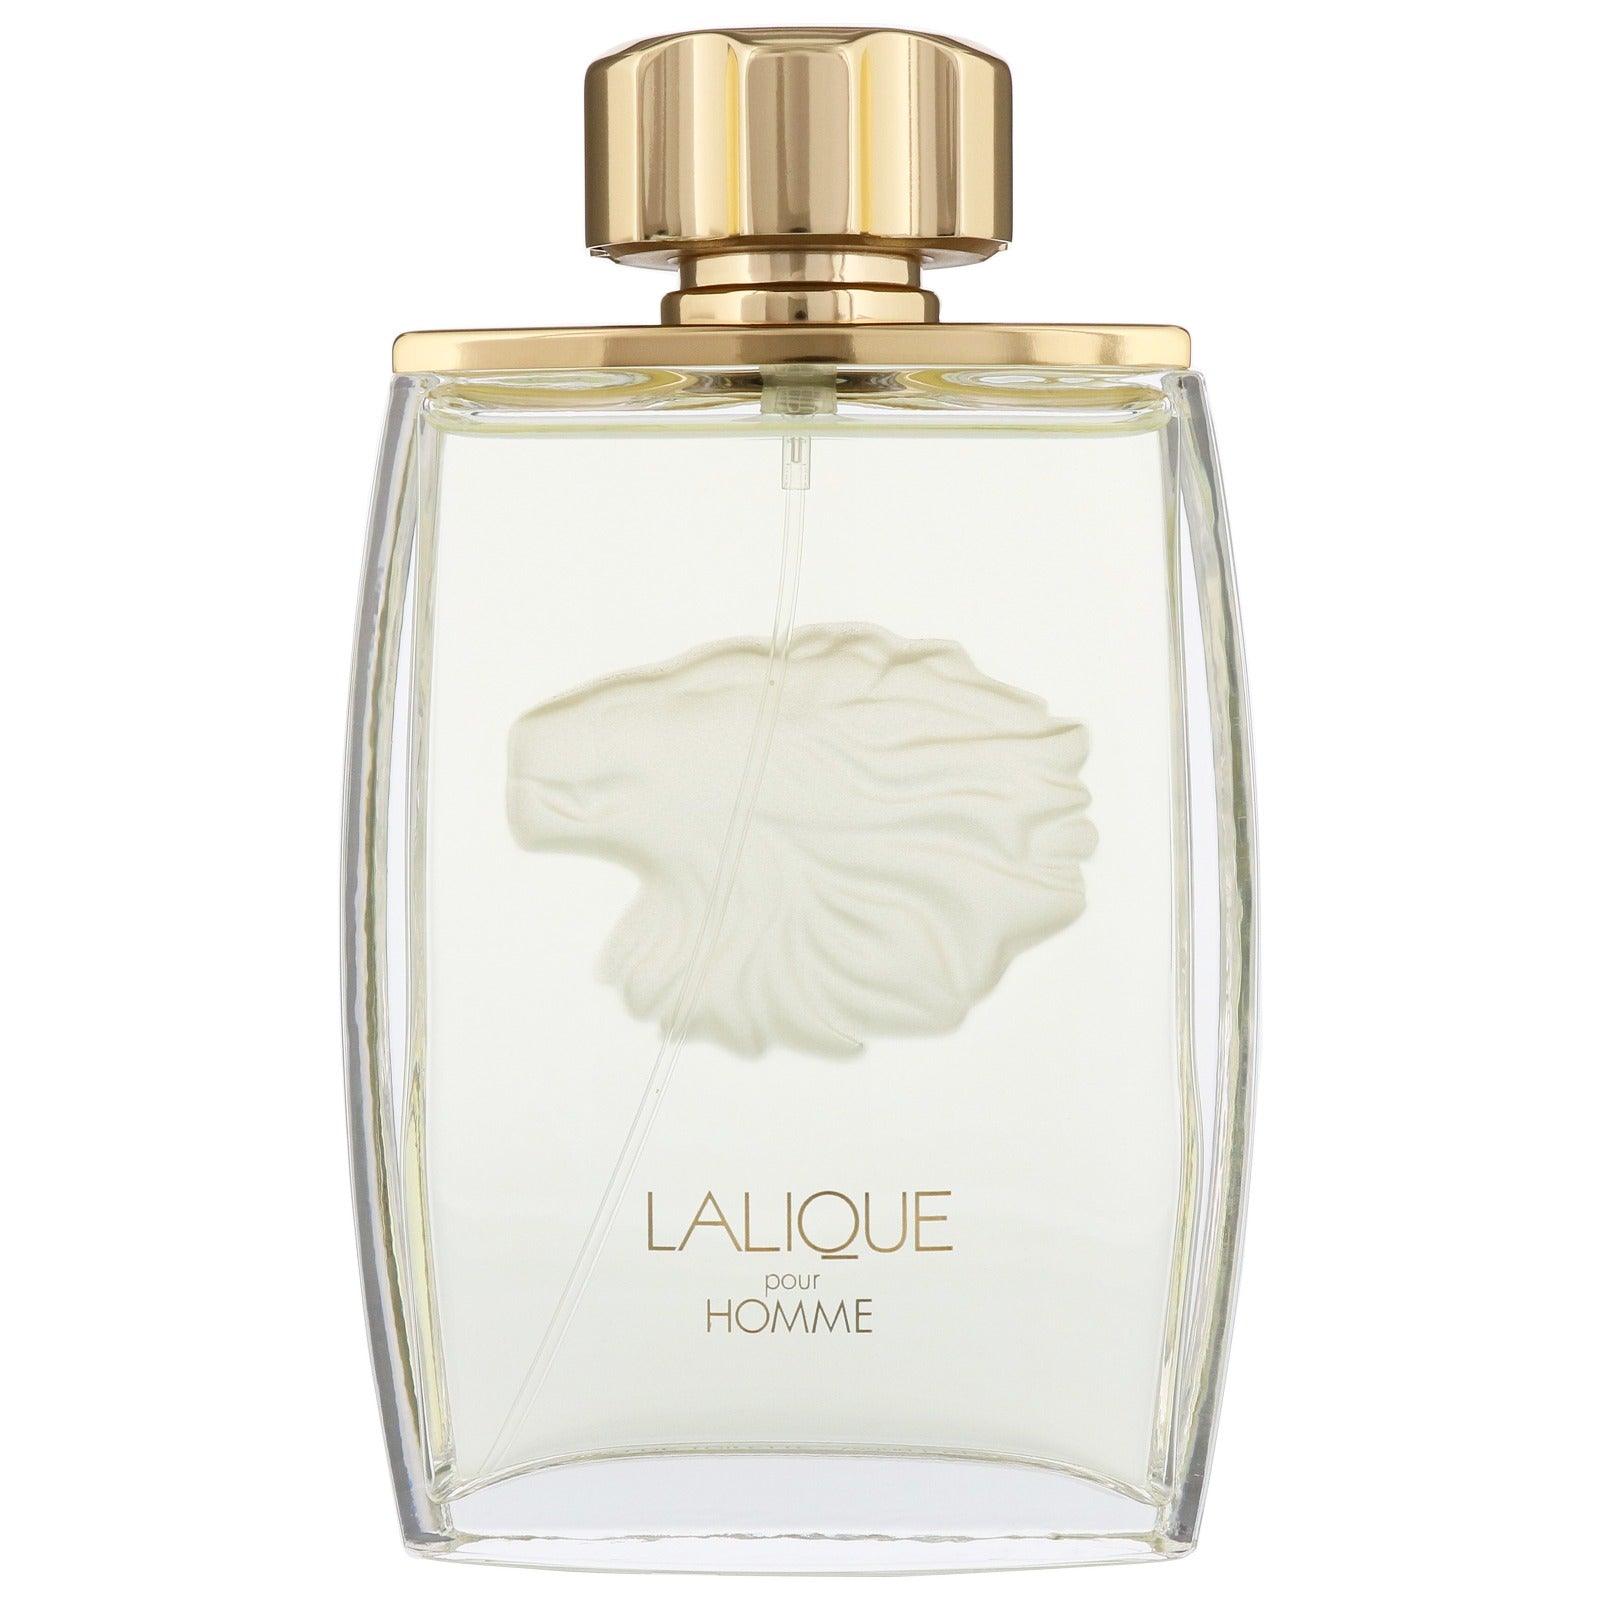 Lalique Pour Homme Eau de Parfum for men - Parfum Gallerie